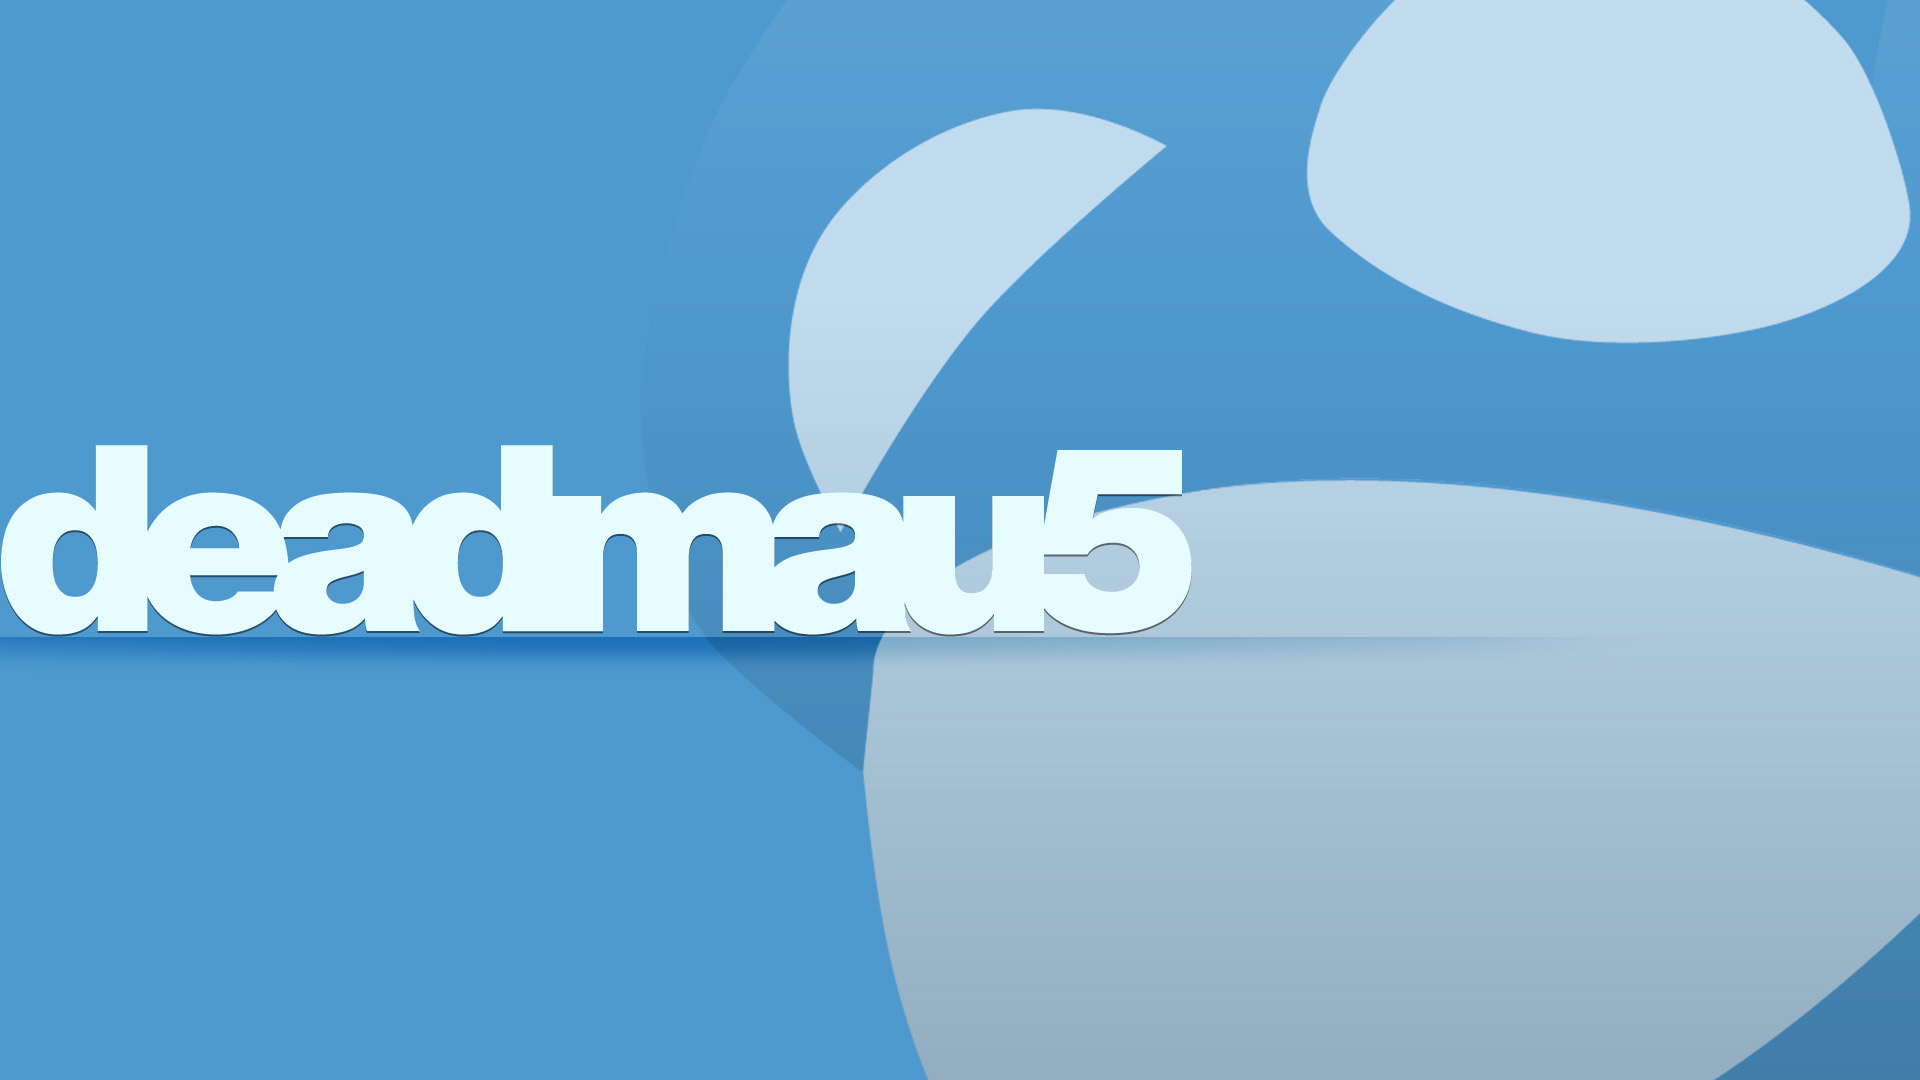 Deadmau5 Wallpaper 1080p By Shamrok3